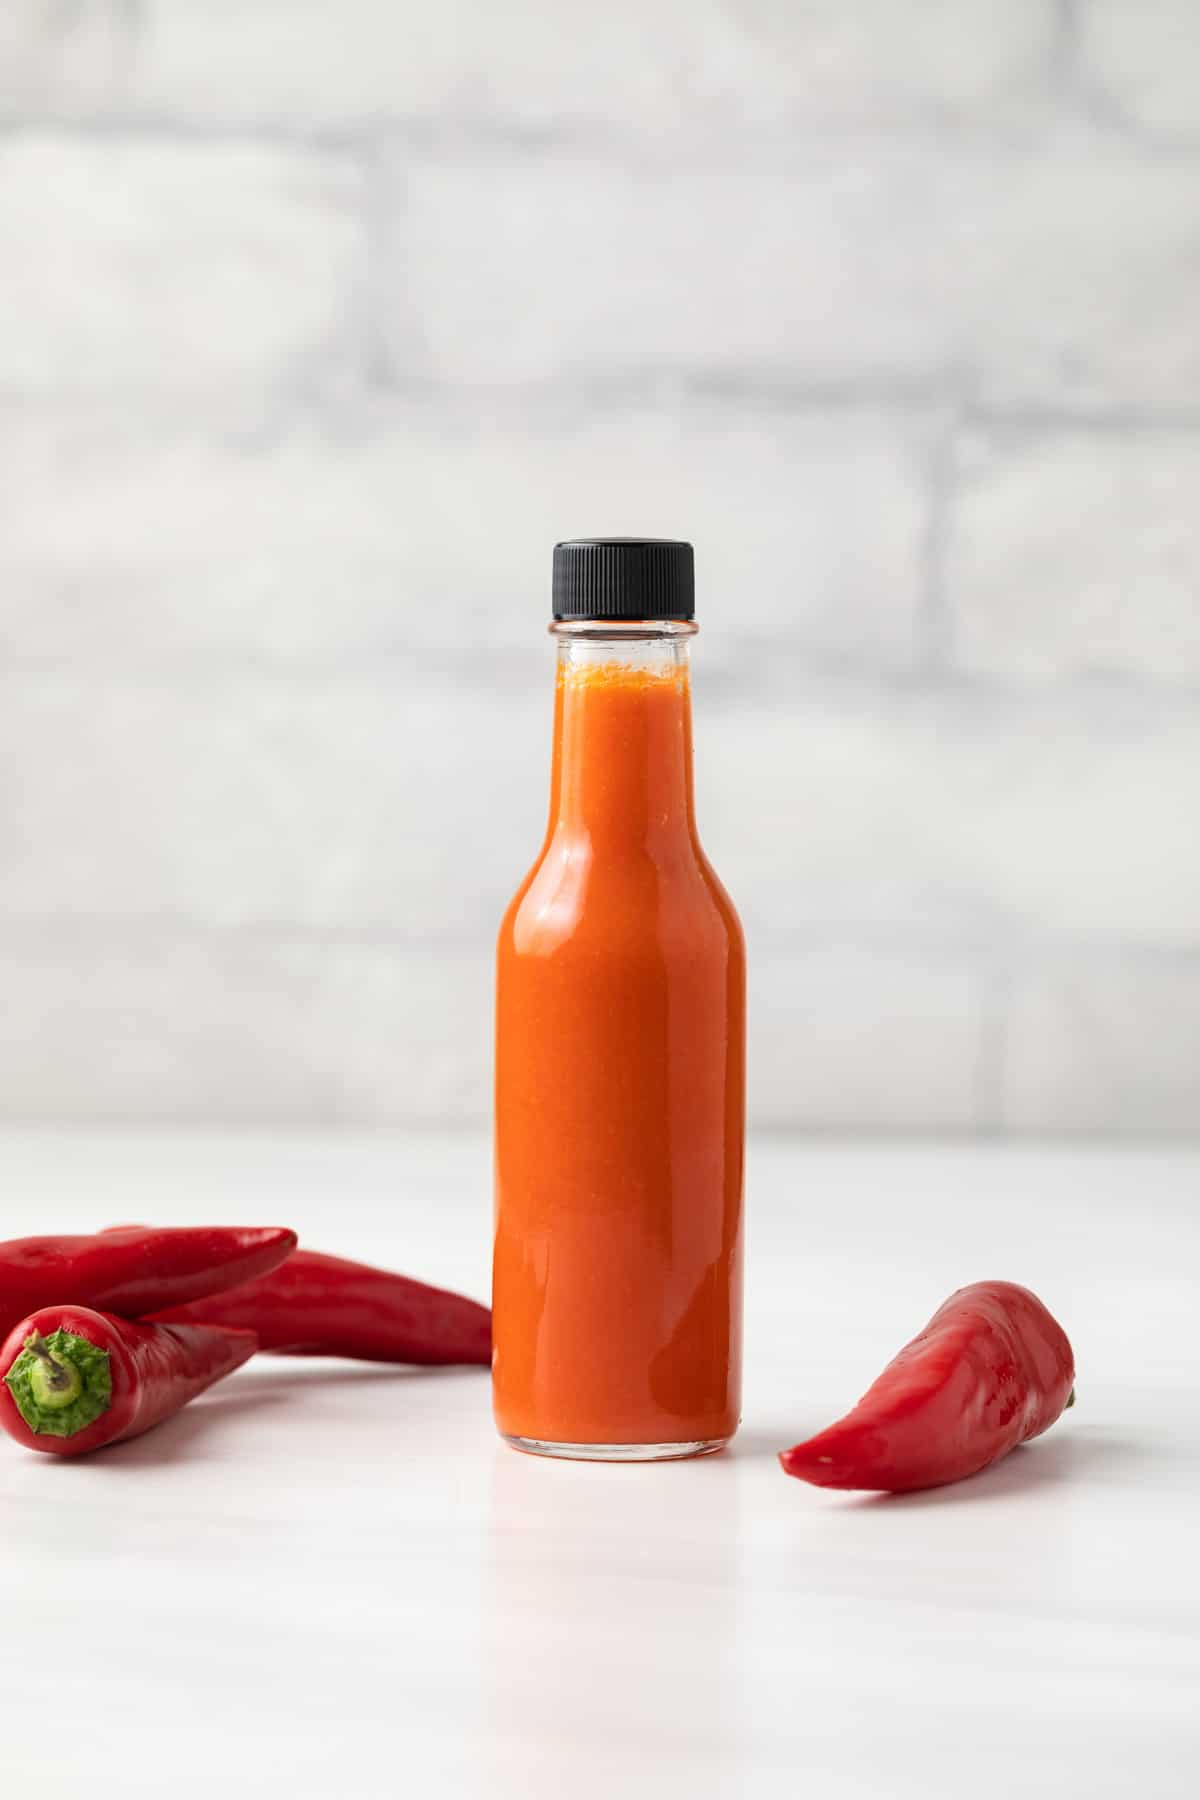 Cayenne pepper hot sauce in a glass jar.